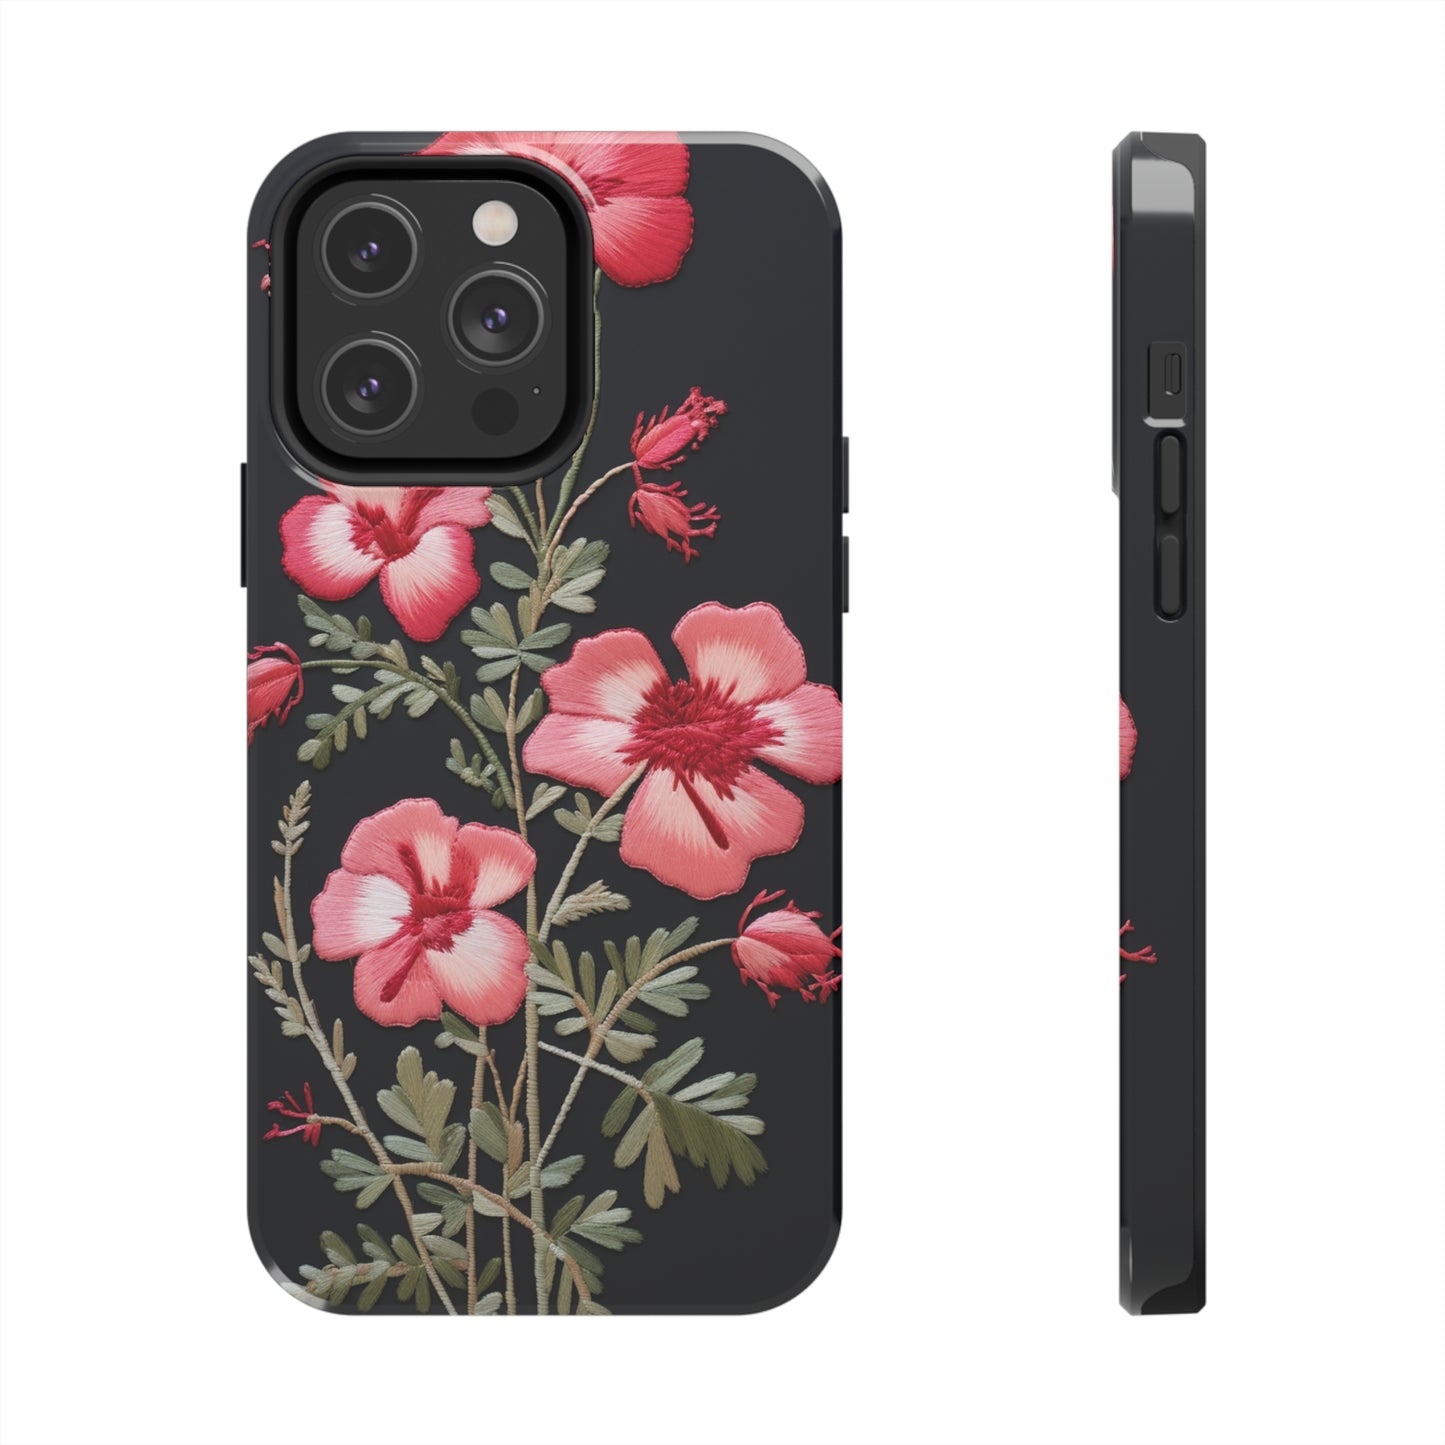 Wildflower iPhone case